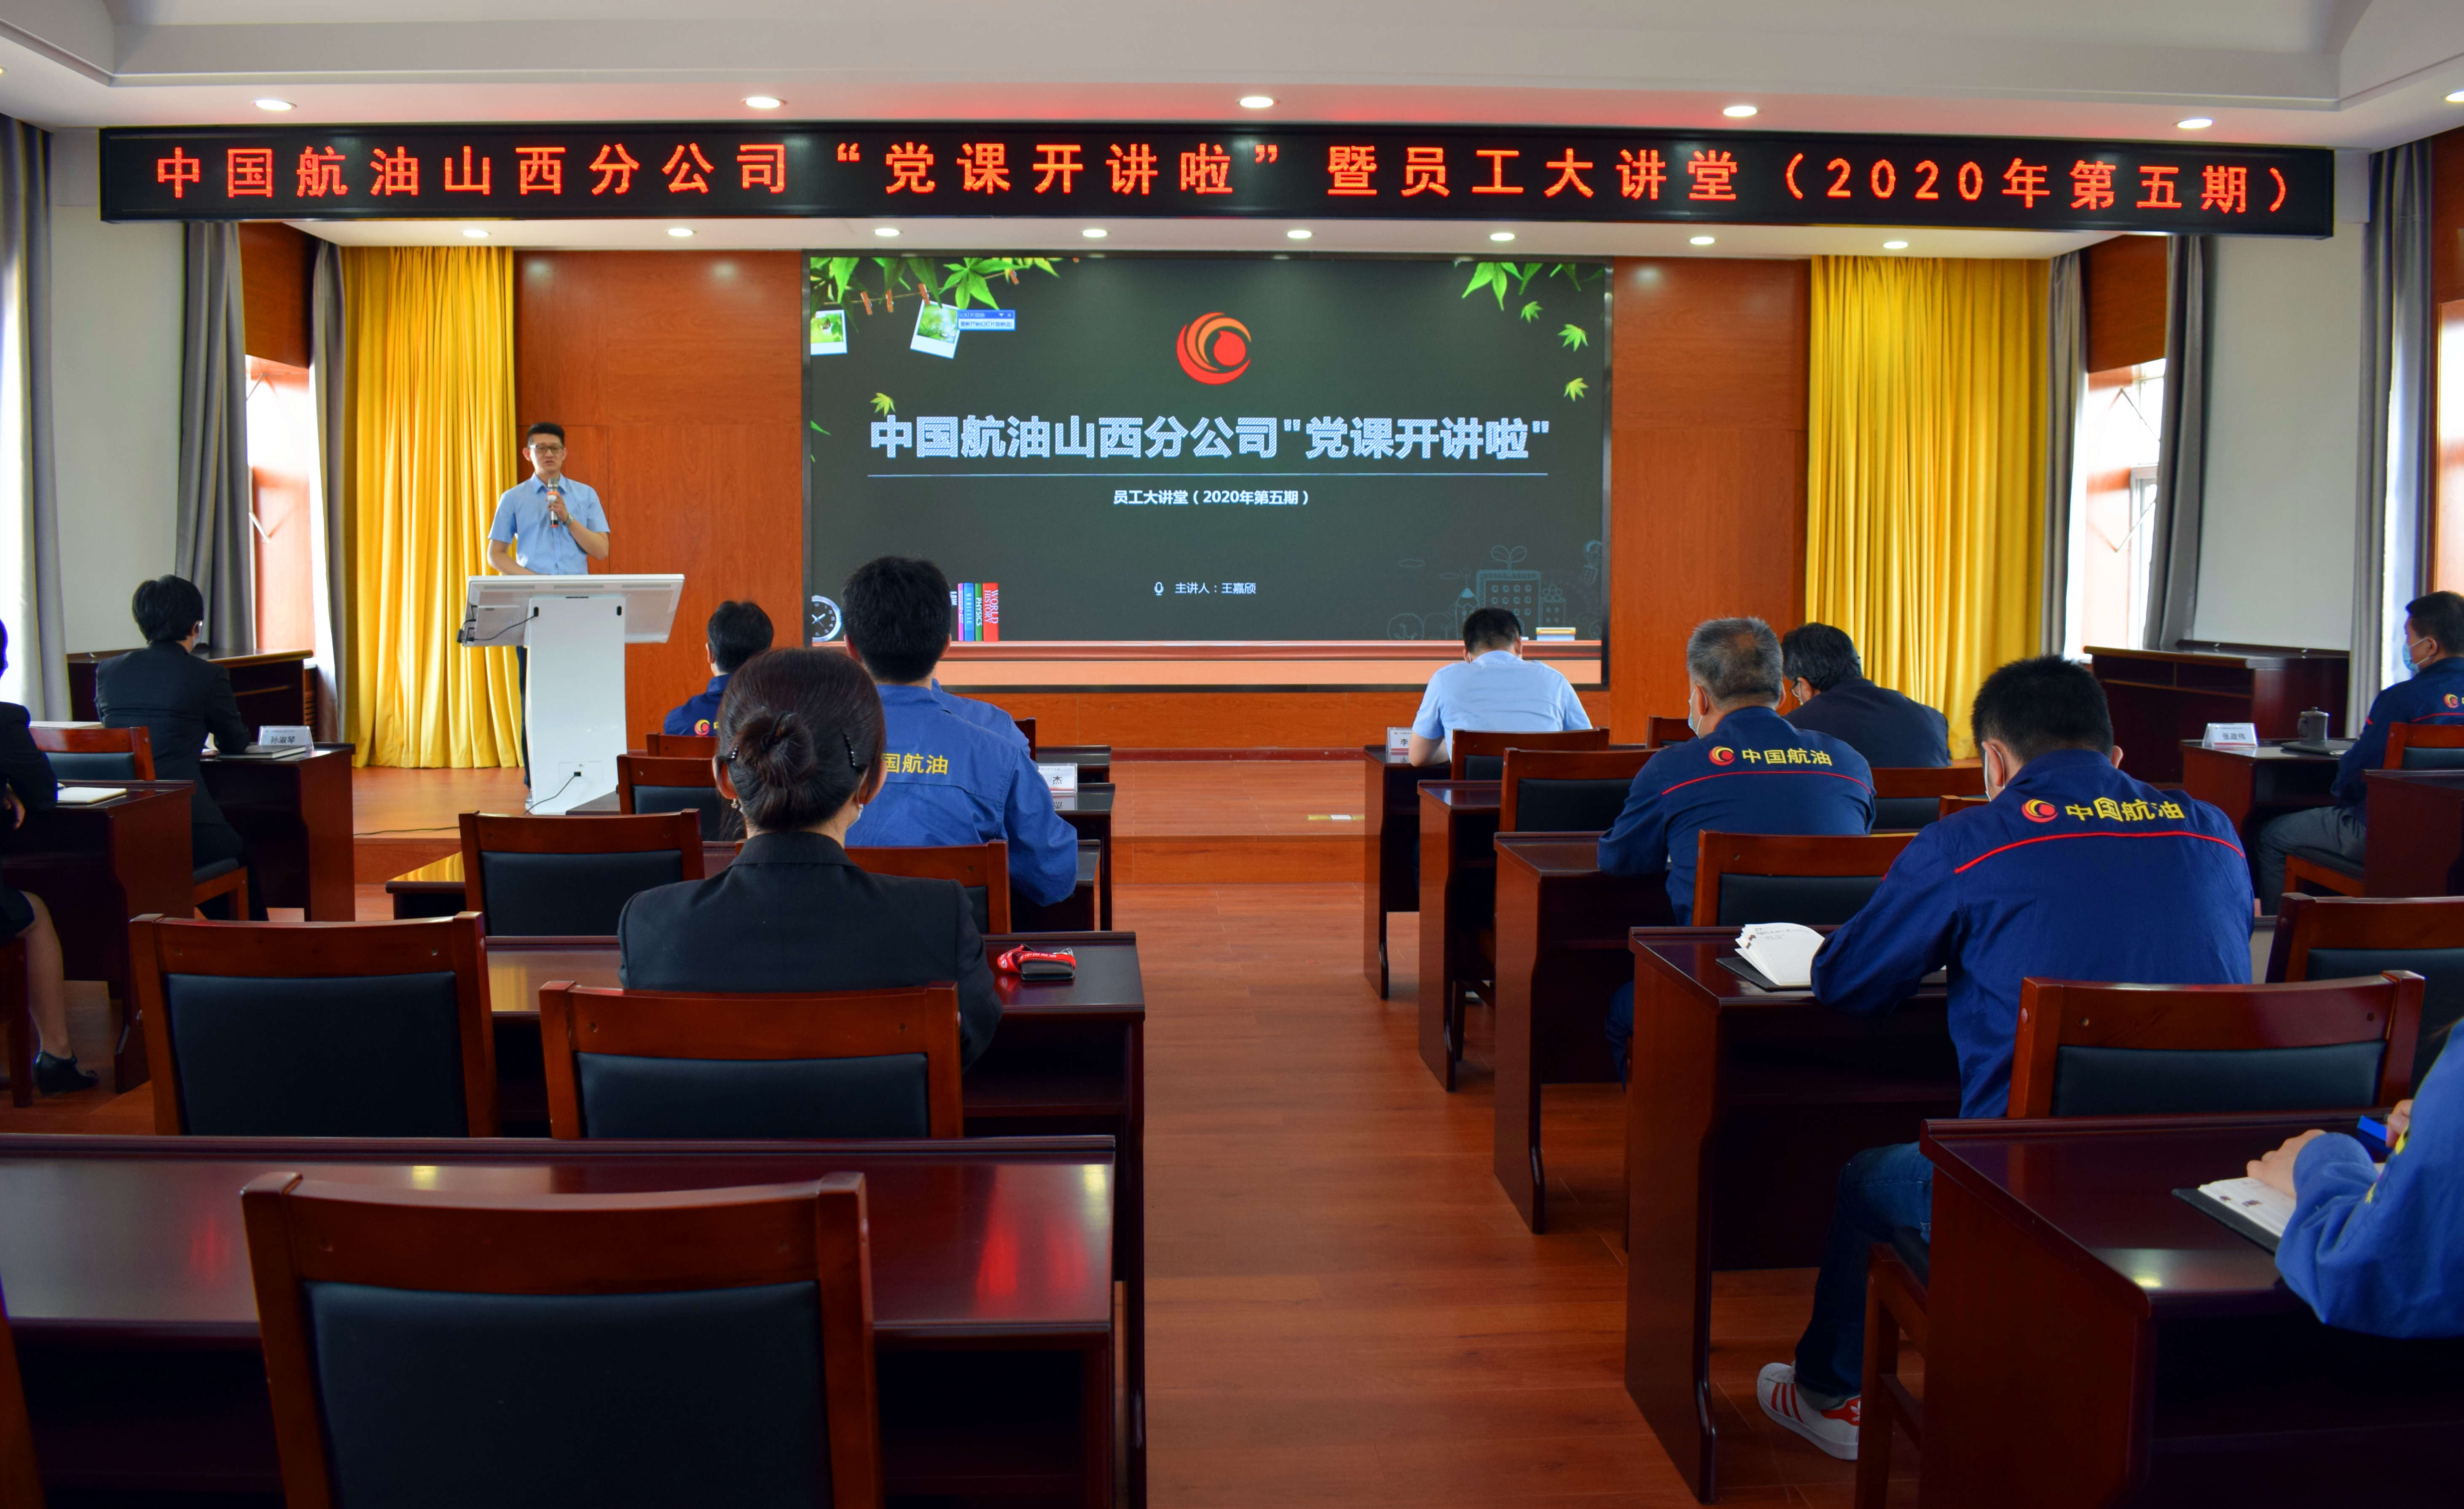 中国航油山西分公司“党课开讲啦”暨2020年第五期员工大讲堂正式开讲